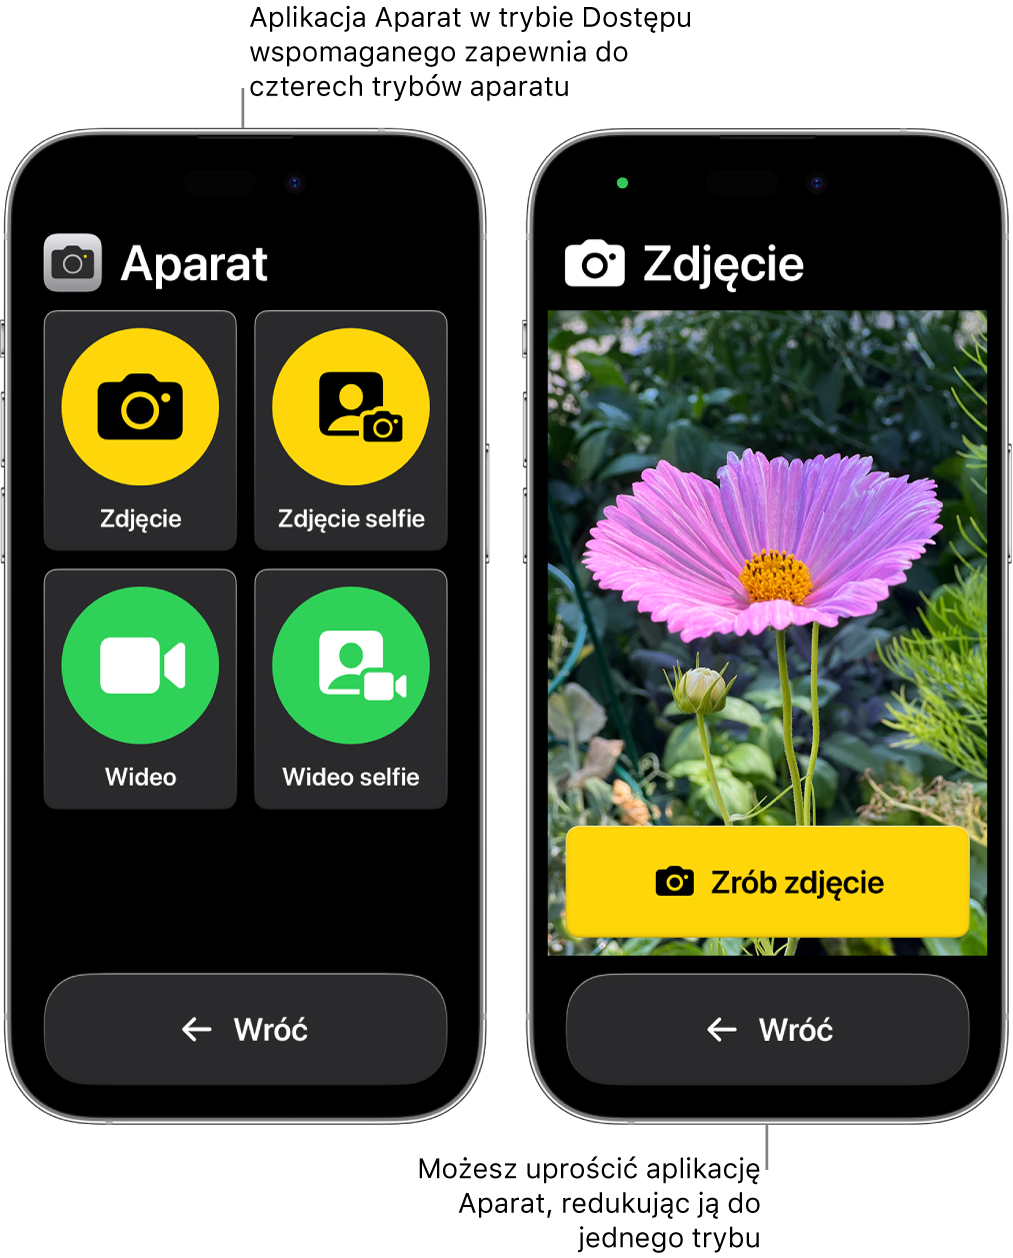 Dwa iPhone’y z uruchomionym trybem Dostęp wspomagany Jeden iPhone wyświetlający aplikację Aparat z trybami do wyboru przez użytkownika, takimi jak Wideo lub Zdjęcie selfie. Drugi iPhone wyświetlający aplikację Aparat z jednym trybem robienia zdjęć.